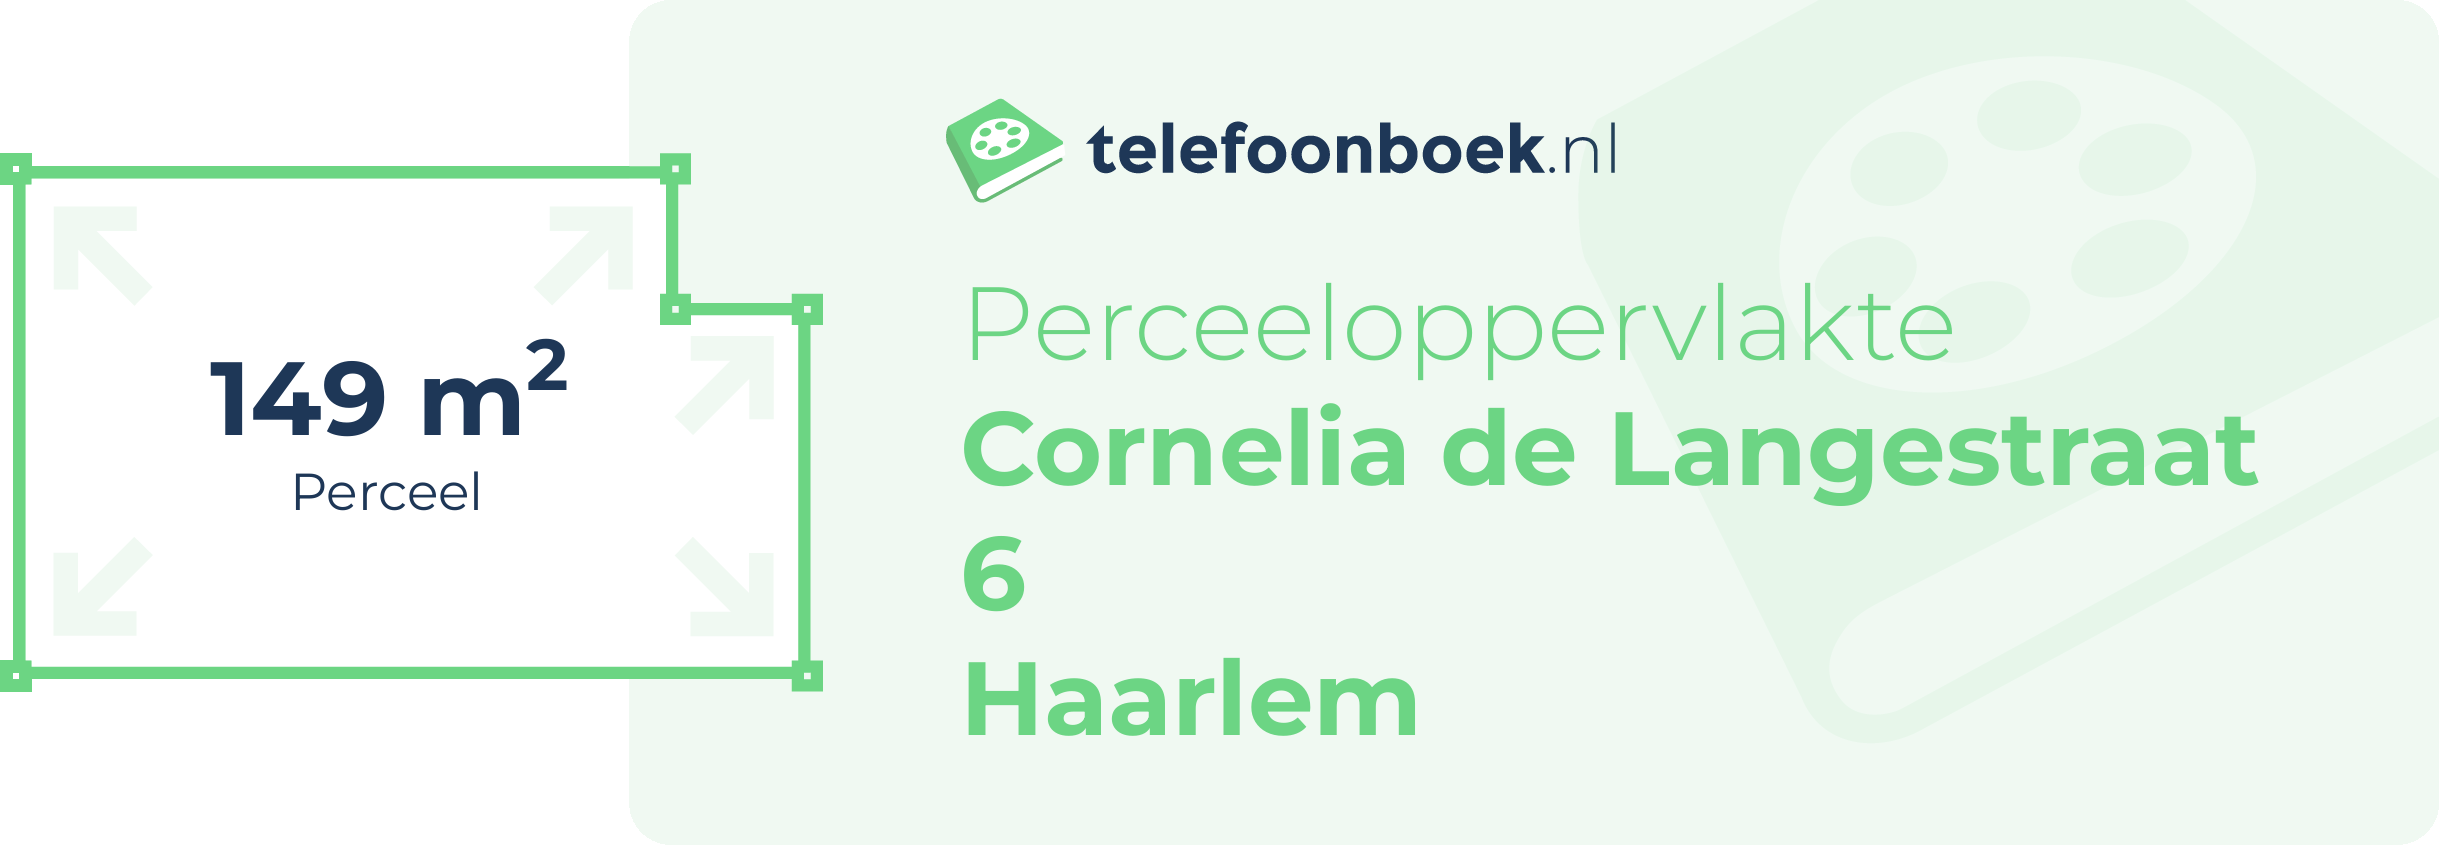 Perceeloppervlakte Cornelia De Langestraat 6 Haarlem